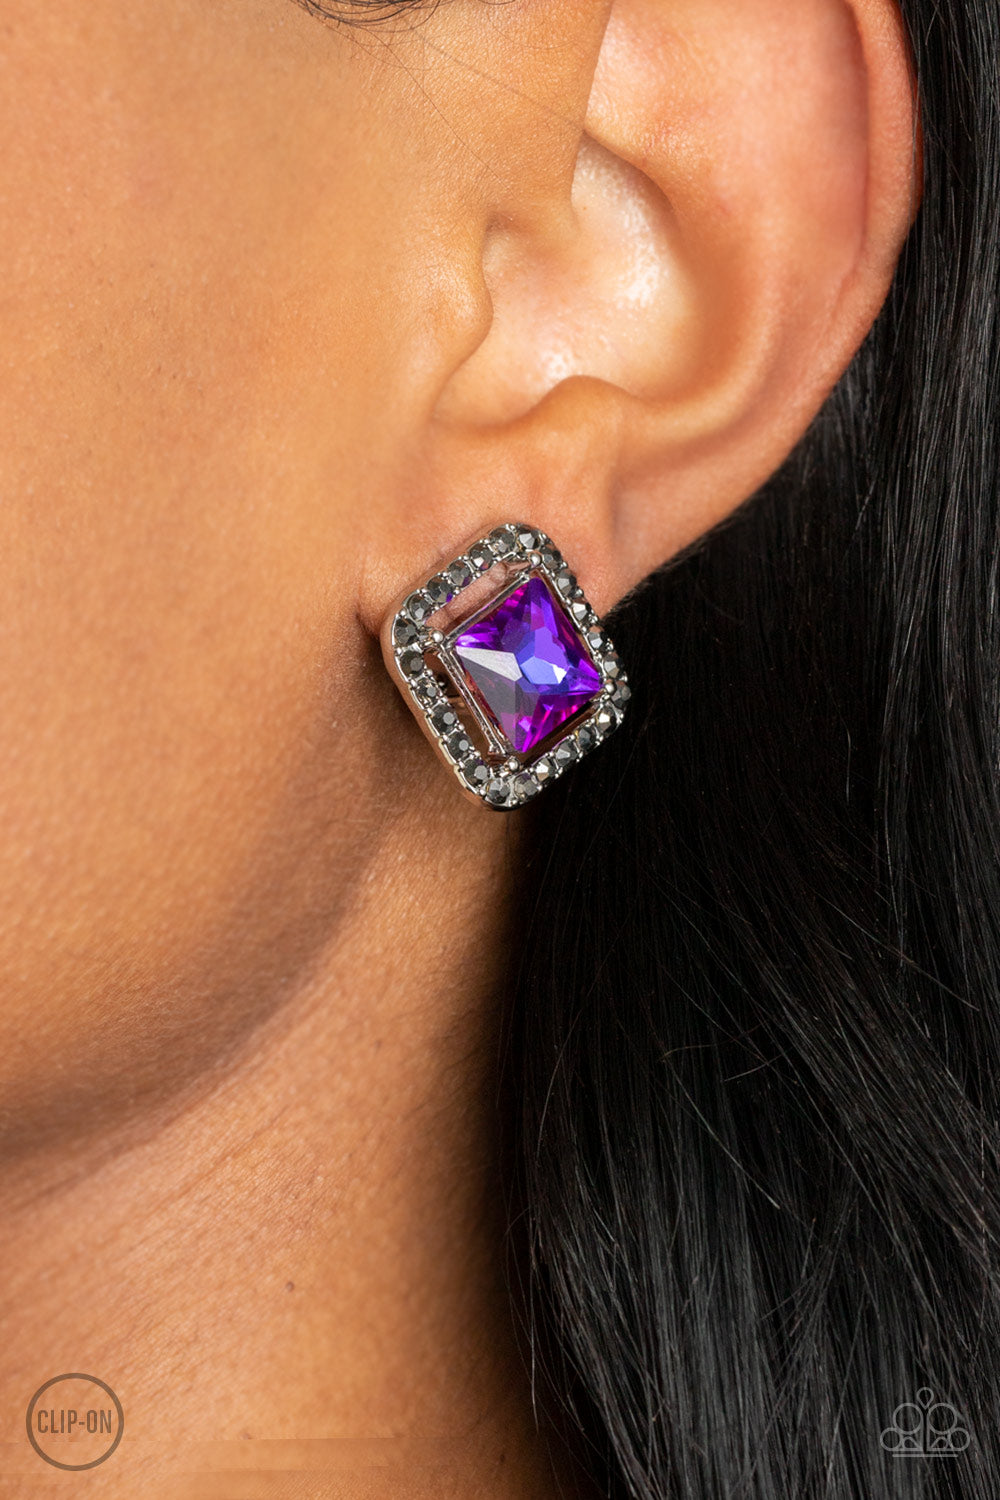 Cosmic Catwalk Earring (Purple, Green)